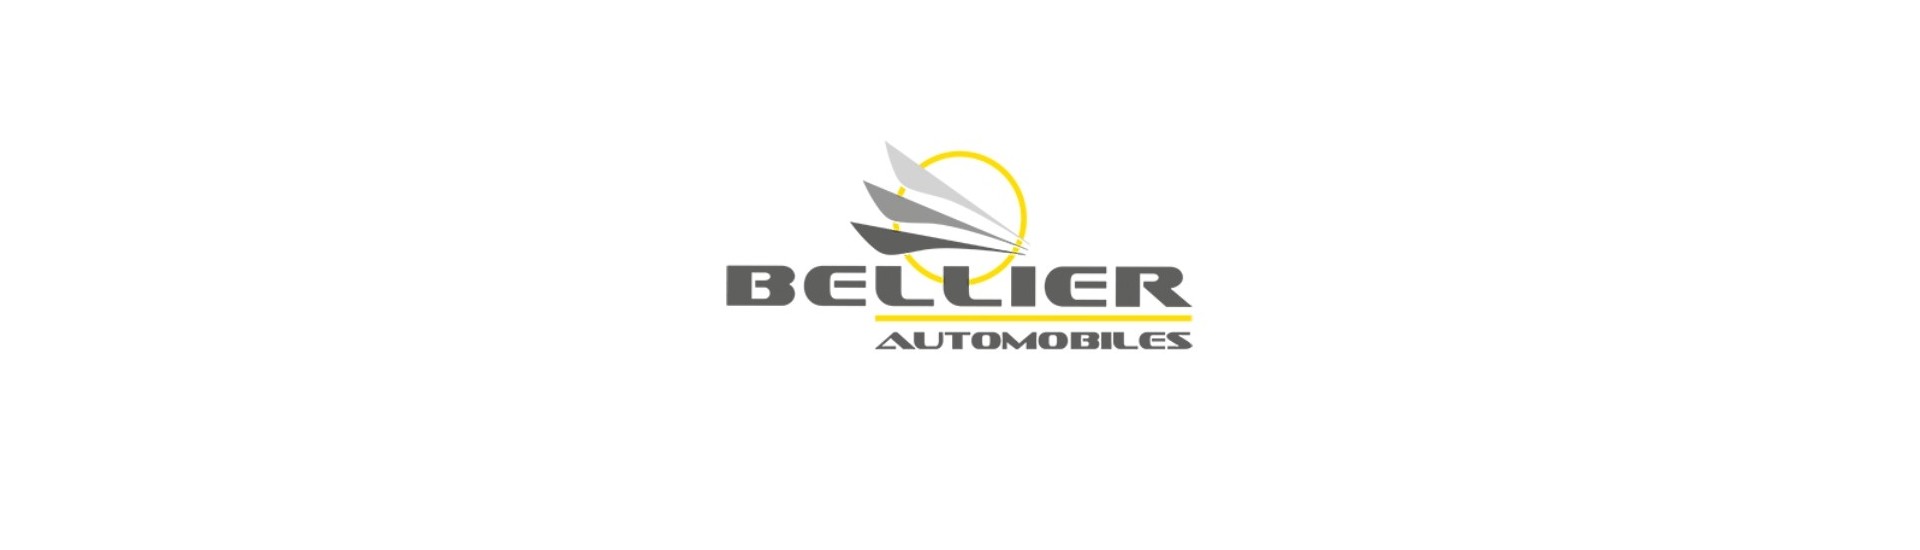 Rollo de suspensión al mejor precio para coche sin permiso Bellier